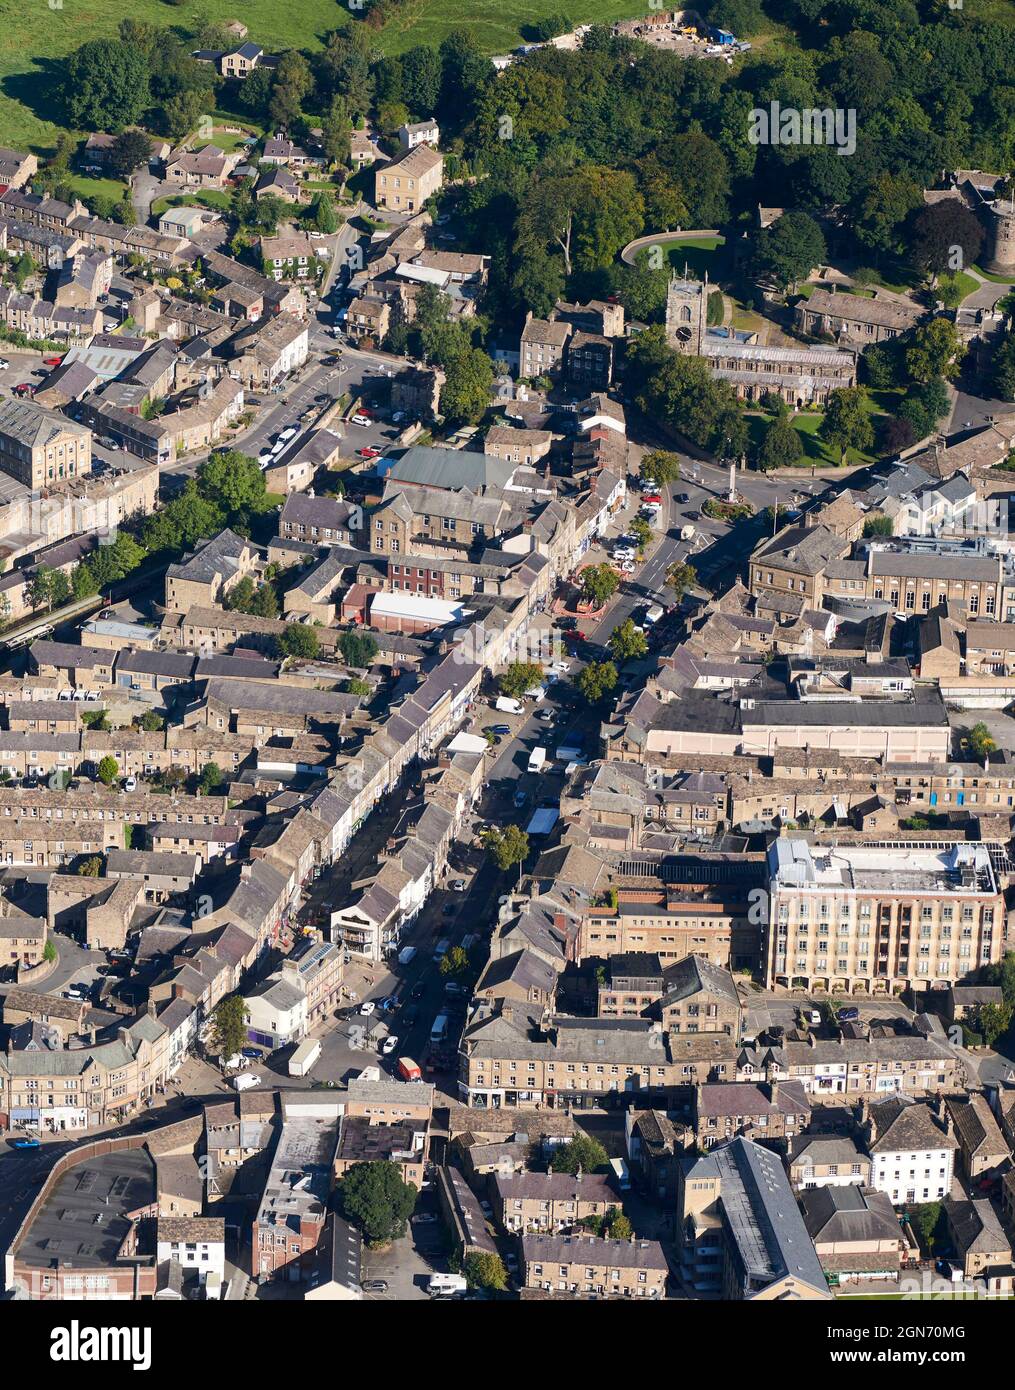 Eine Luftaufnahme der Marktstadt und des regionalen Zentrums, von Skipton, North Yorkshire, Nordengland, Großbritannien, zeigt die Hauptstraße und das Stadtzentrum Stockfoto